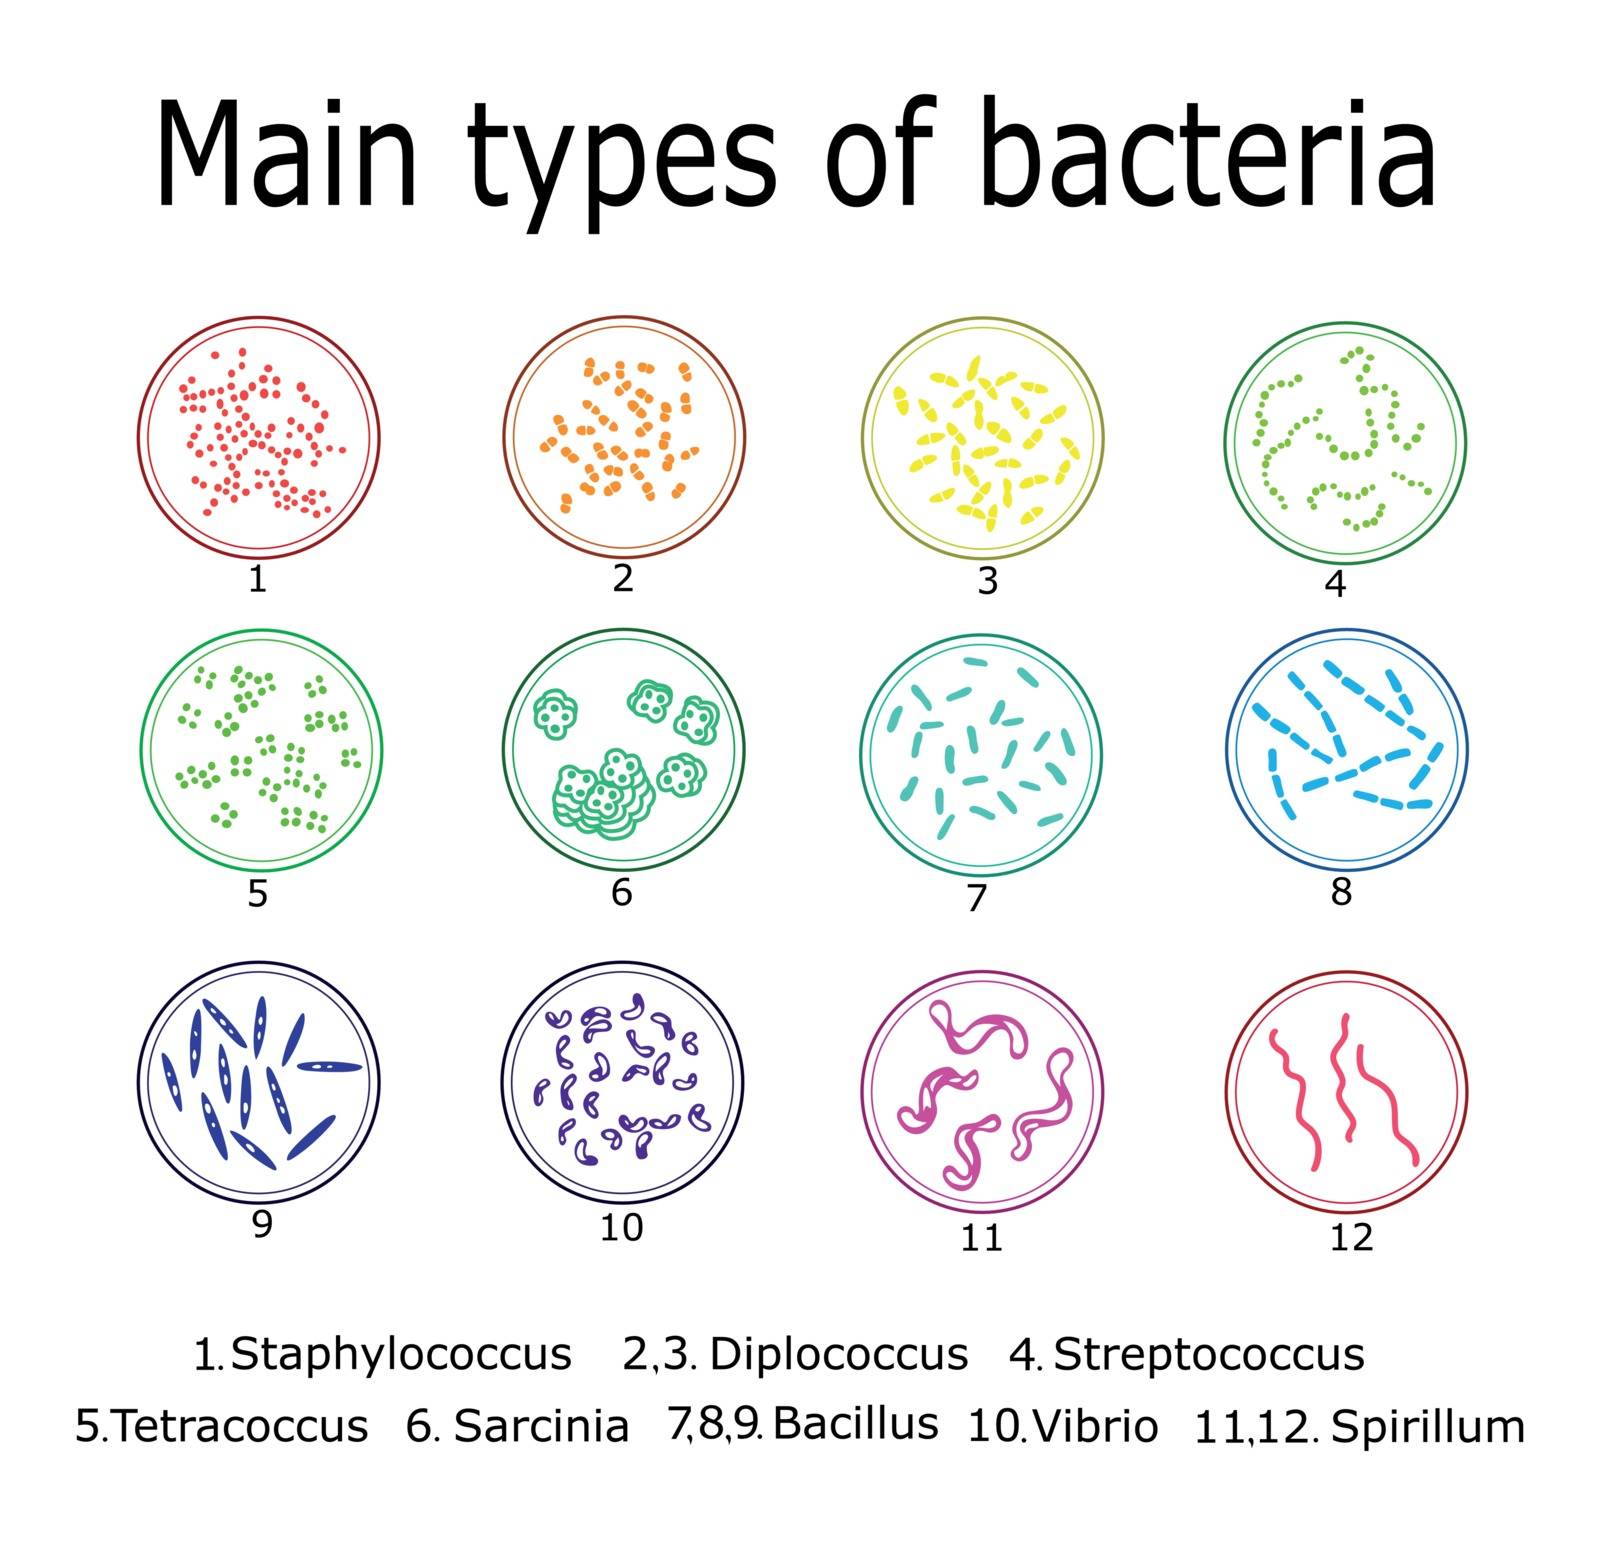 The main types of bacteria such as Monococcus, Diplococcus, Tetracoccus, Streptococcus, Staphylococcus, Bacillus, Vibrio, Spirillum, Sarcinia.